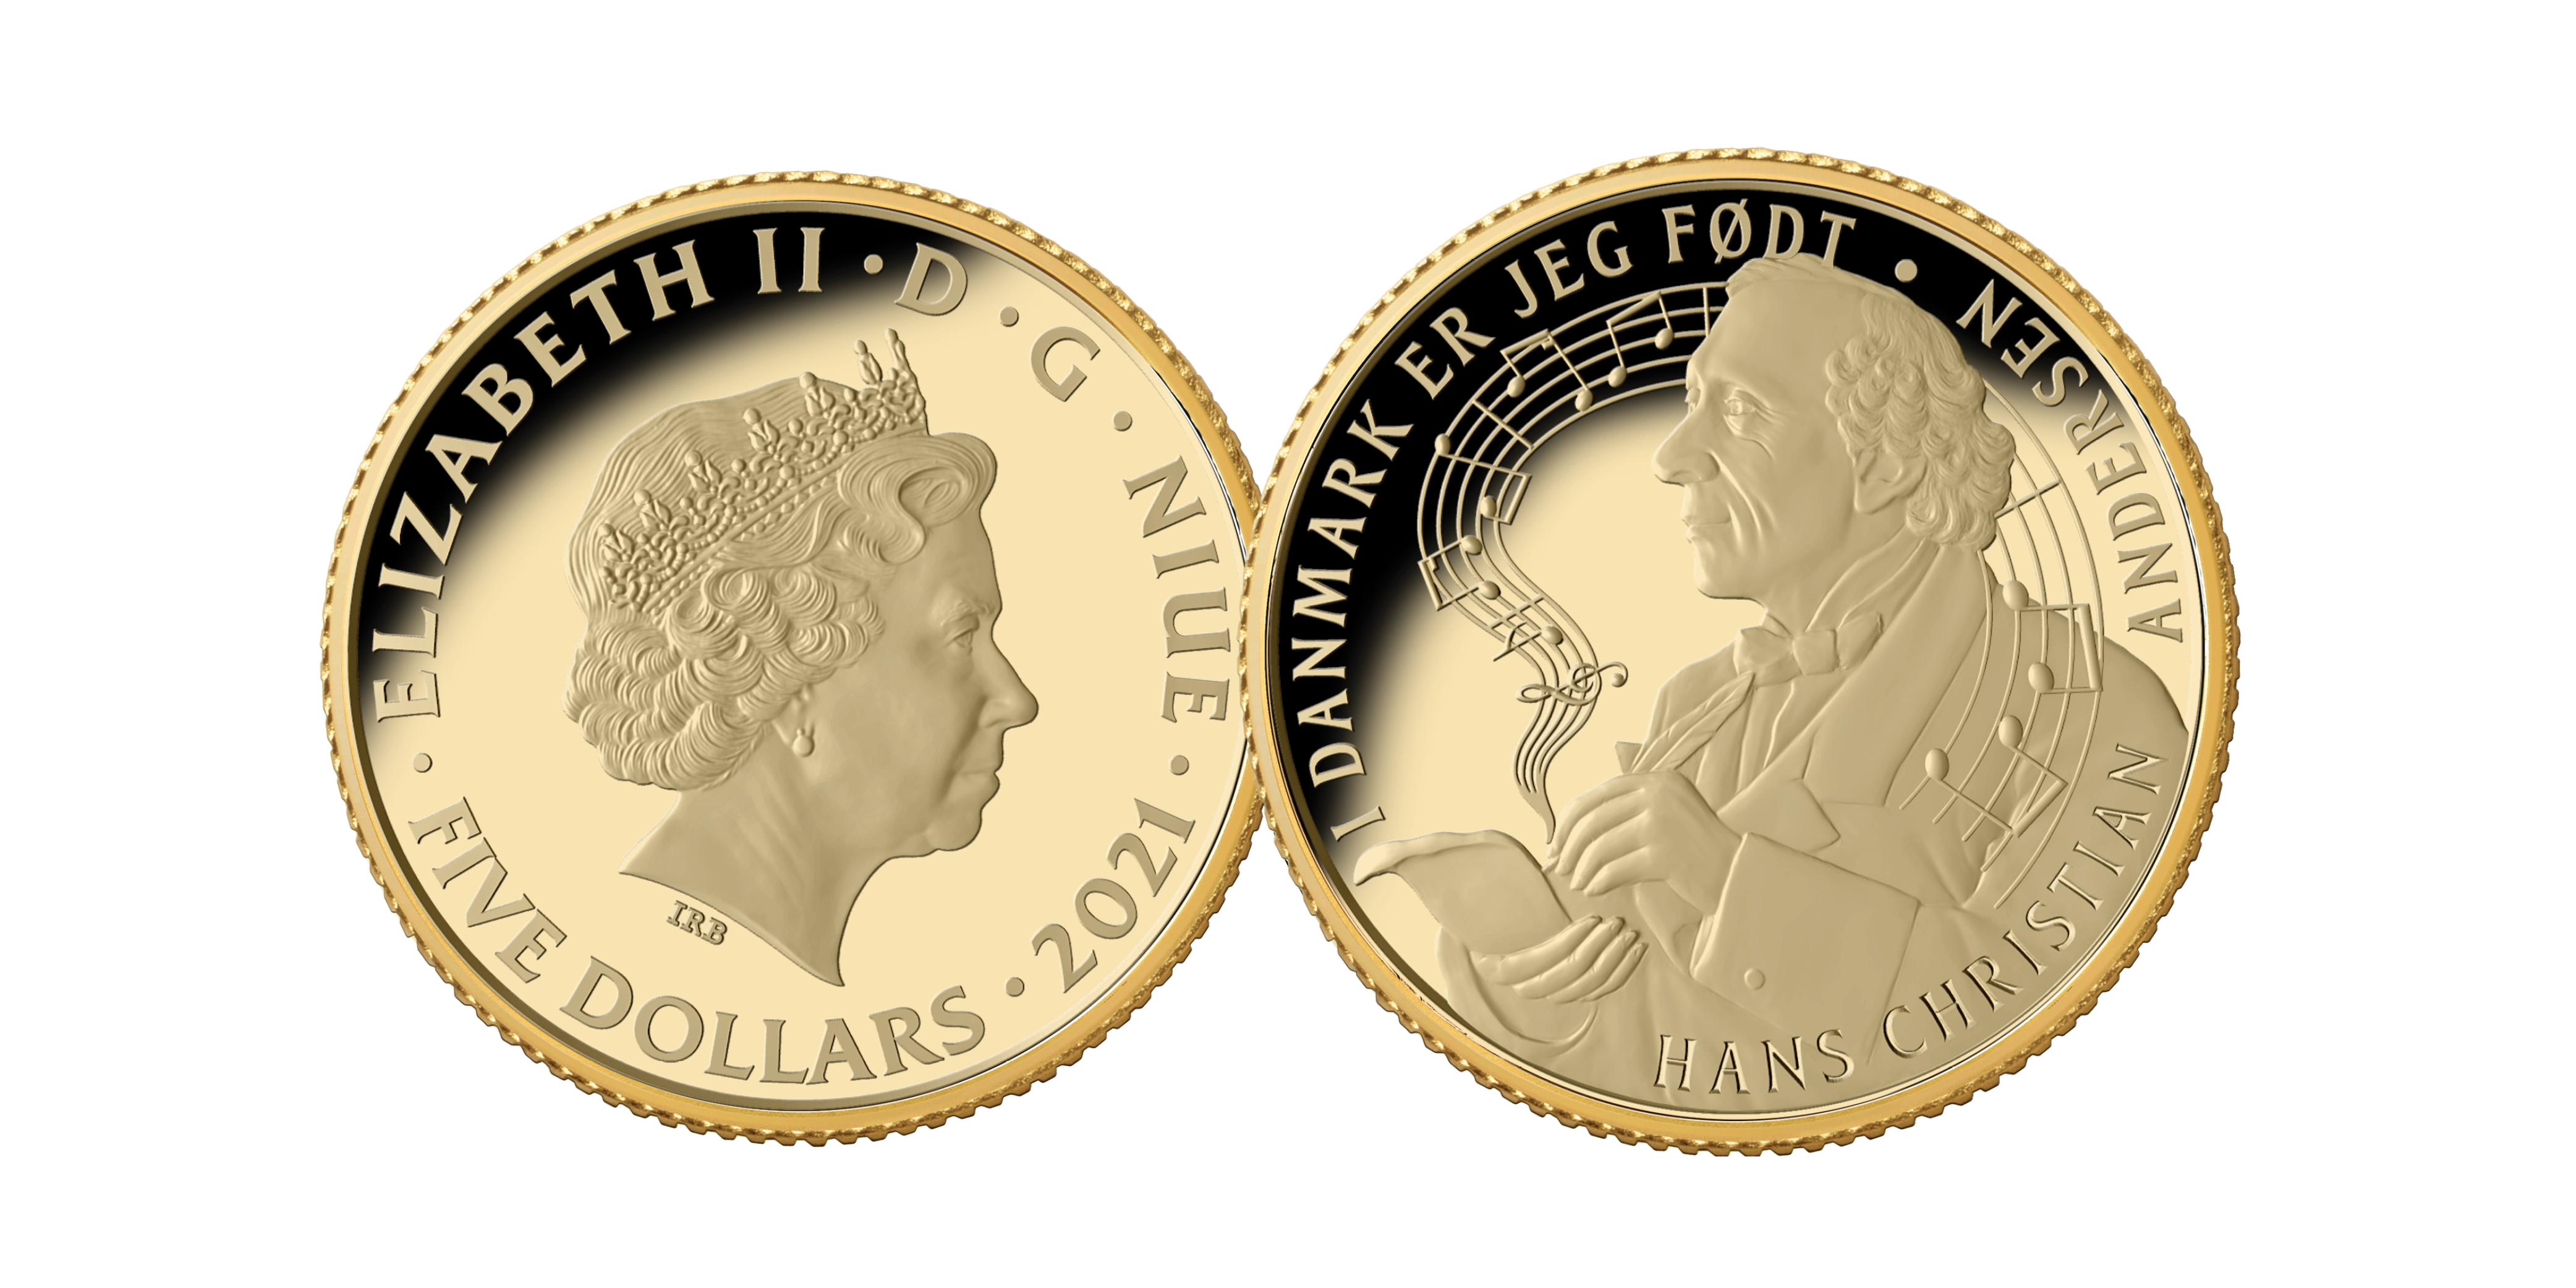 Køb vores helt nye og eksklusive guldmønt med i 24 karat guld er i bedste samlerkvalitet. Kun hos Mønthuset Danmark. 